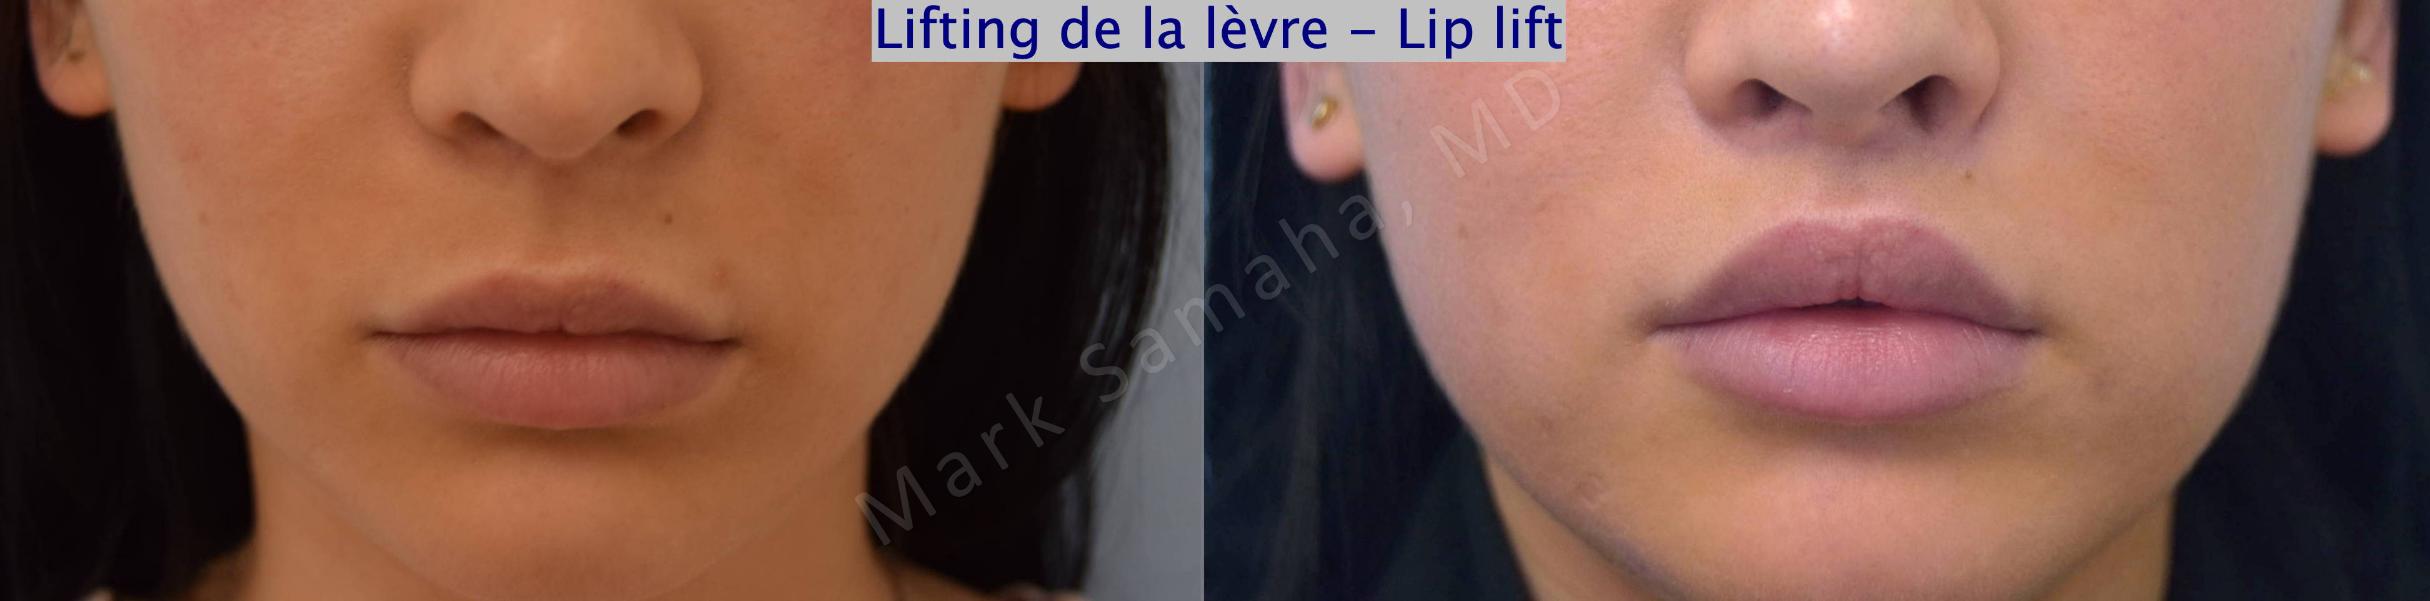 Before & After Lip Lift / Lifting de la lèvre supérieure Case 122 View #1 View in Mount Royal, QC